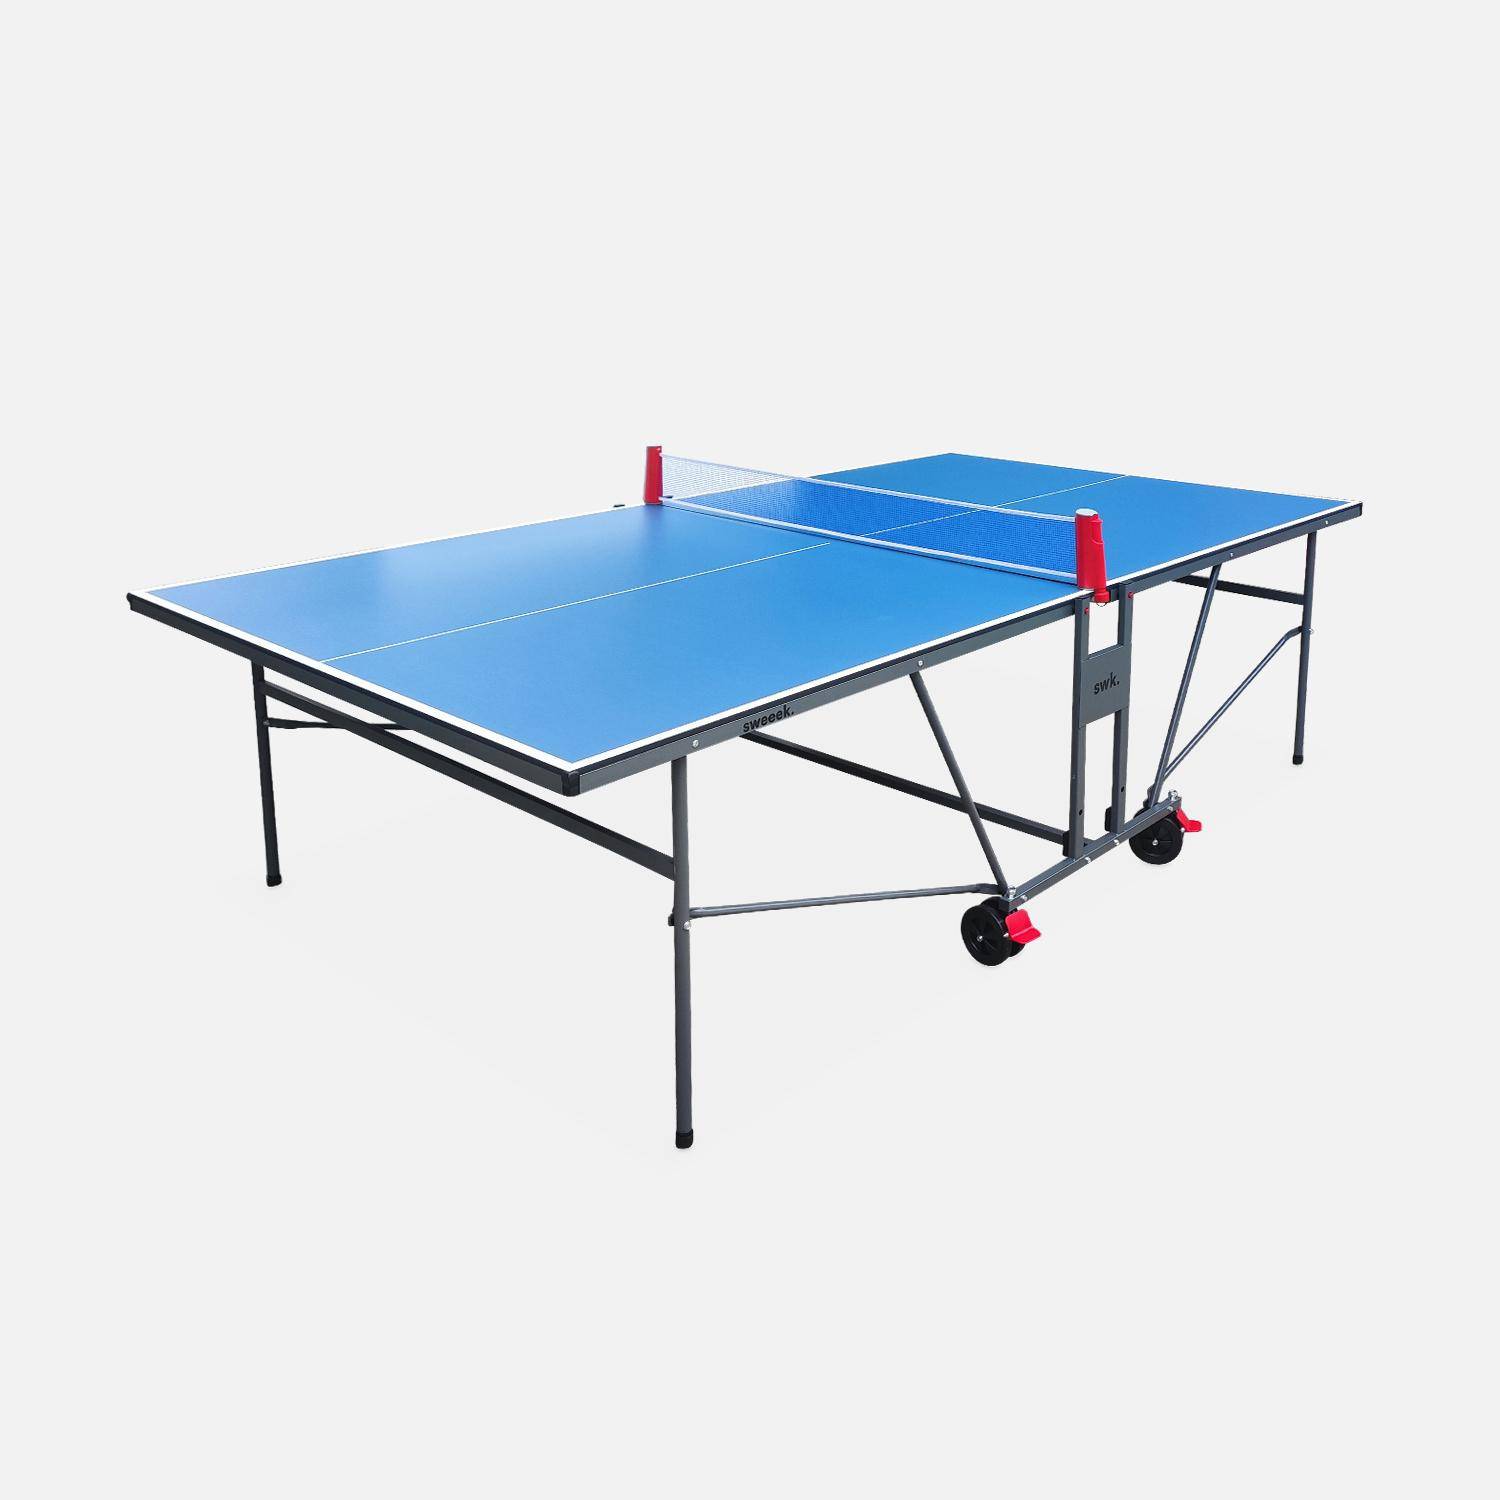 Table de ping pong INDOOR bleue, avec 2 raquettes et 3 balles, pour utilisation intérieure, sport tennis de table Photo1